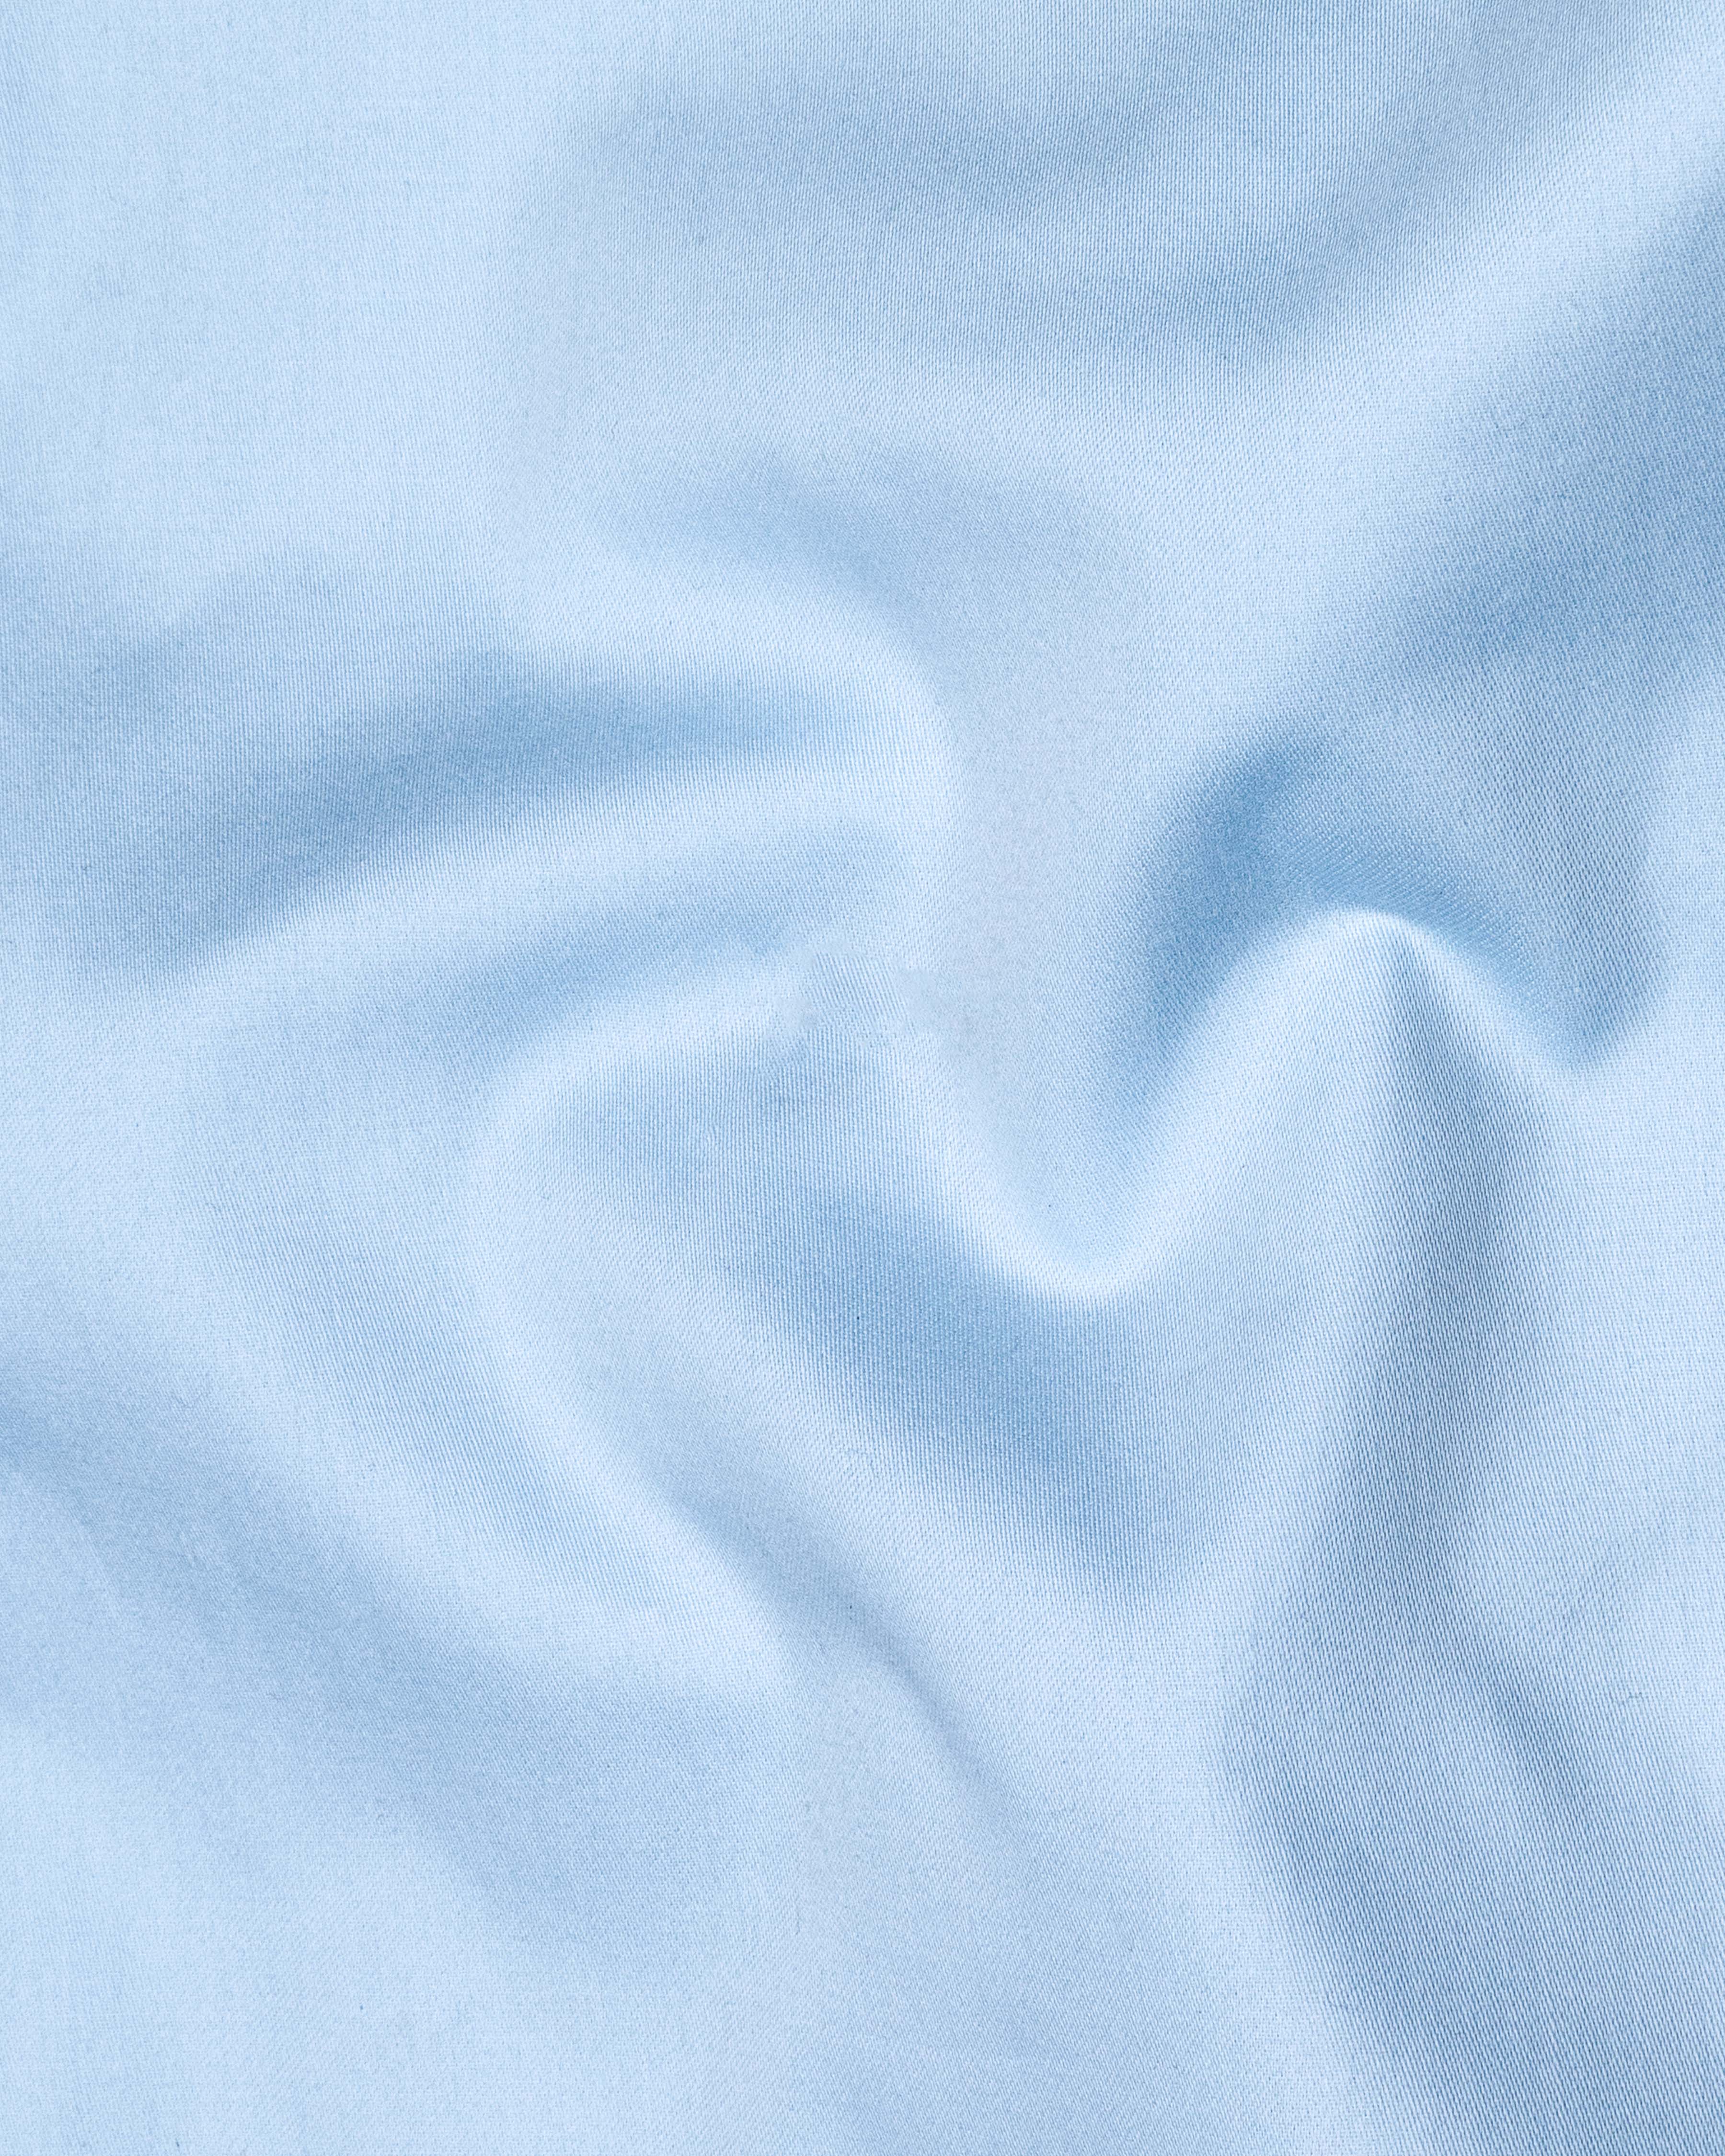 Spindle Blue Patch Pocket Paragliding Embroidered Super Soft Premium Cotton Shirt  8624-BLK-E008-38,8624-BLK-E008-H-38,8624-BLK-E008-39,8624-BLK-E008-H-39,8624-BLK-E008-40,8624-BLK-E008-H-40,8624-BLK-E008-42,8624-BLK-E008-H-42,8624-BLK-E008-44,8624-BLK-E008-H-44,8624-BLK-E008-46,8624-BLK-E008-H-46,8624-BLK-E008-48,8624-BLK-E008-H-48,8624-BLK-E008-50,8624-BLK-E008-H-50,8624-BLK-E008-52,8624-BLK-E008-H-52